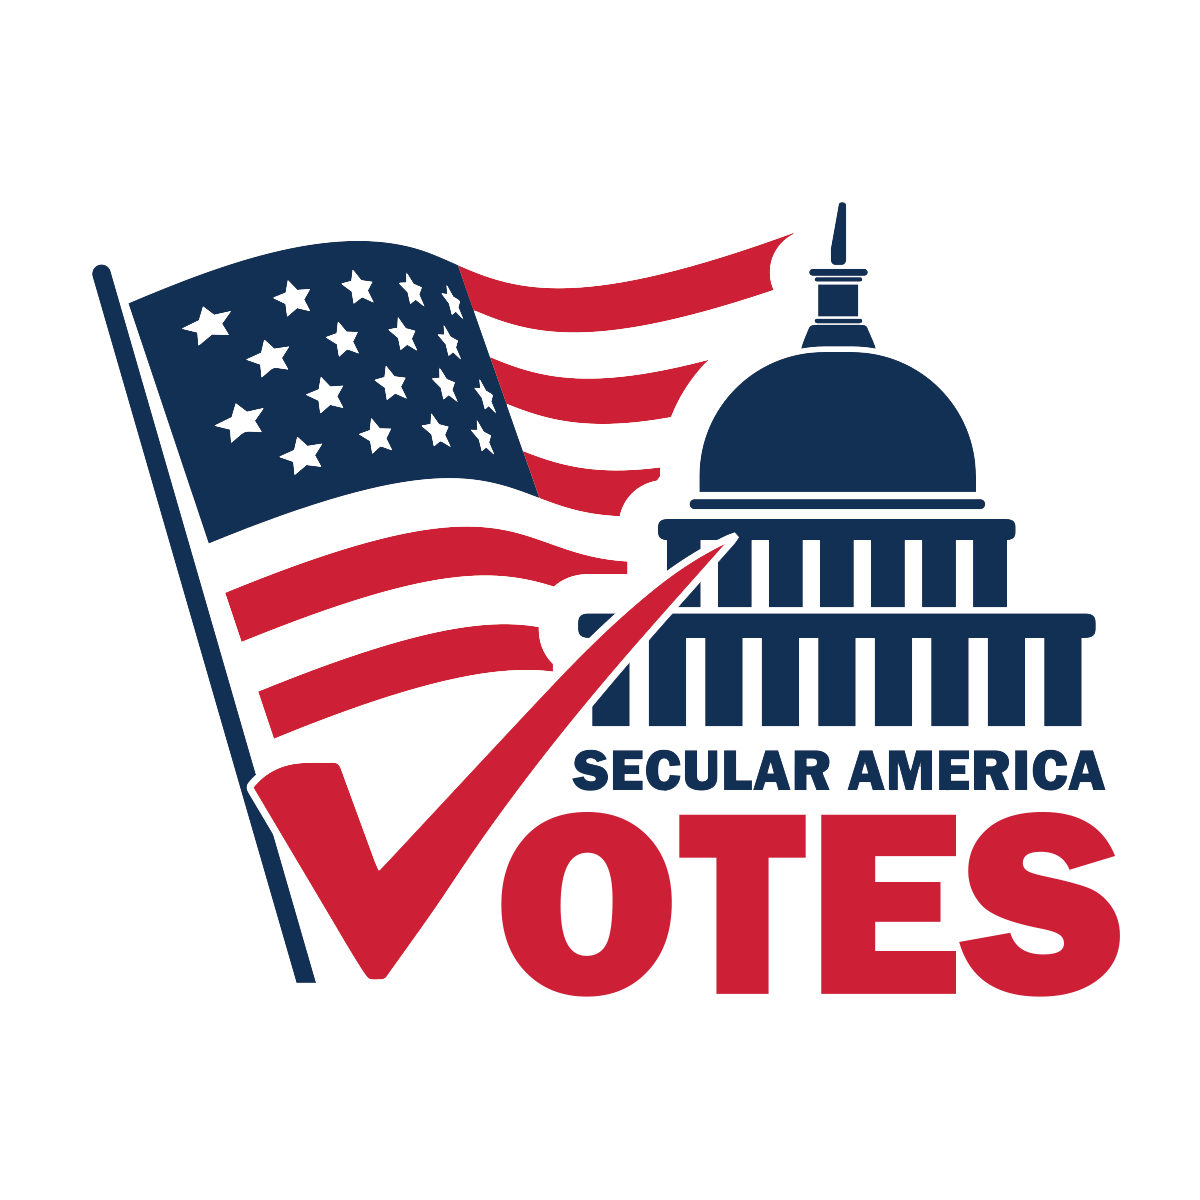 Vote day. Значки Америка выборы. Выборы США значок. Избирательный логотип США.